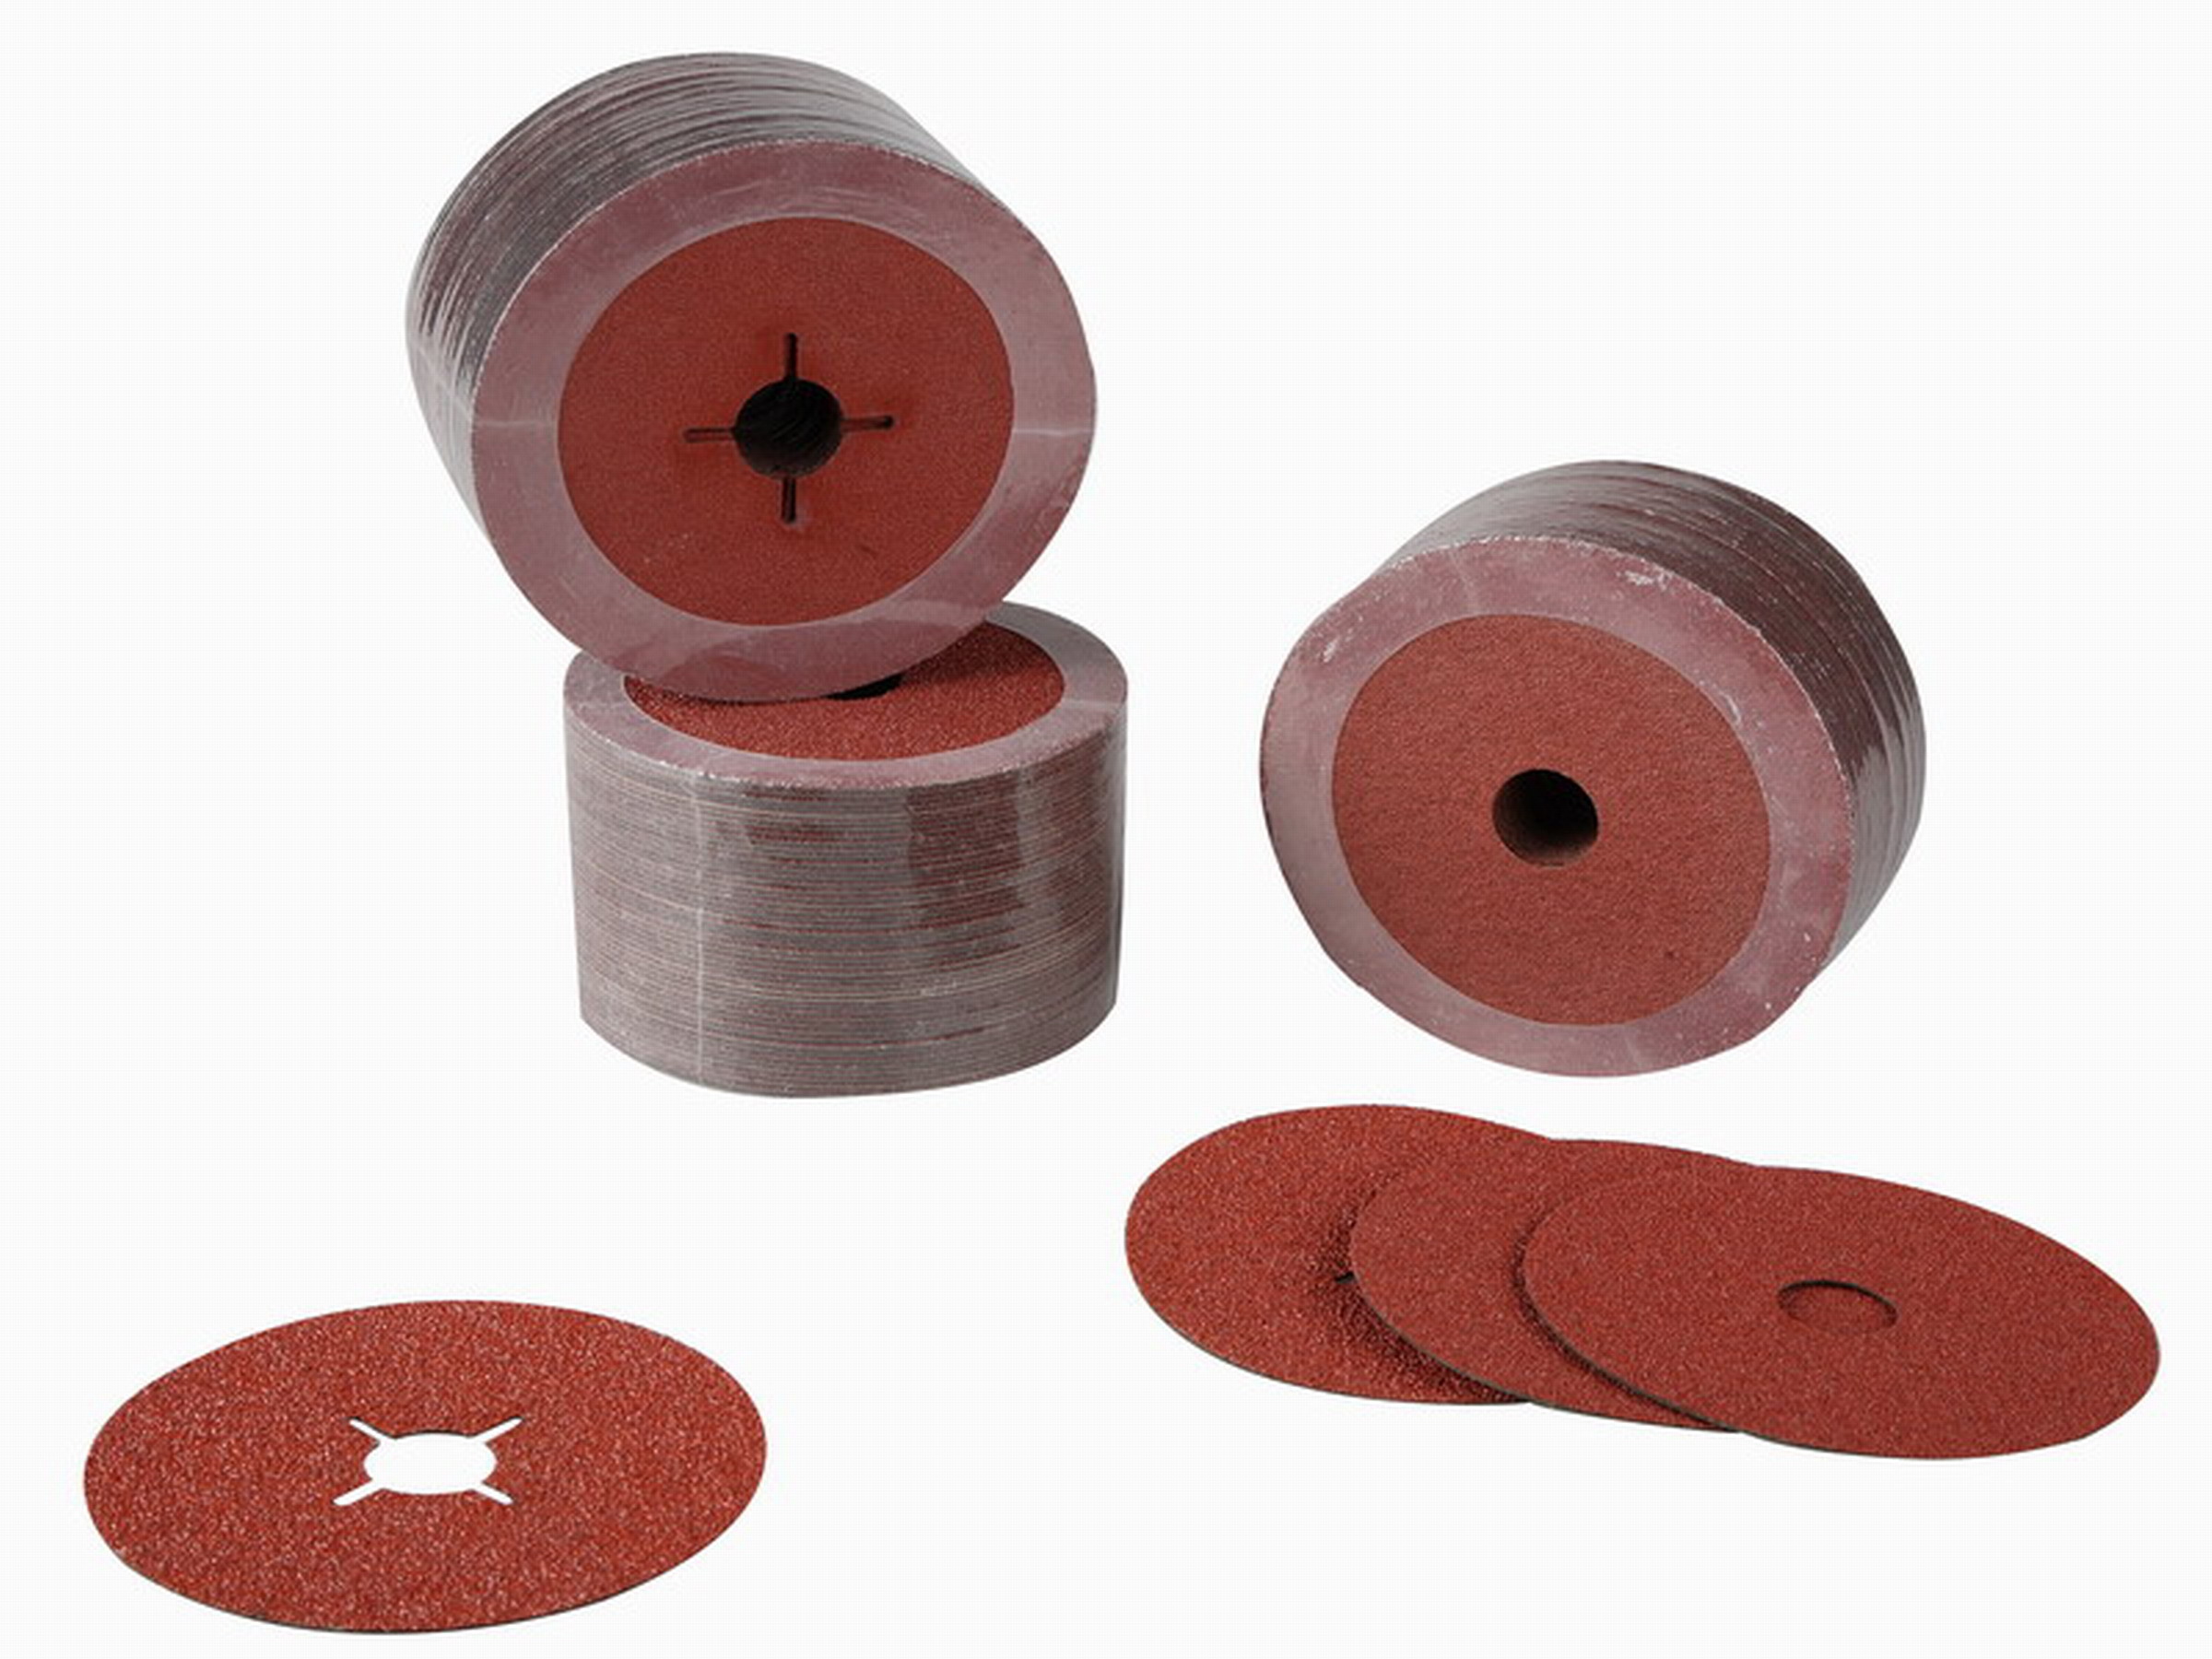 Metal Resin Fiber Sanding Discs